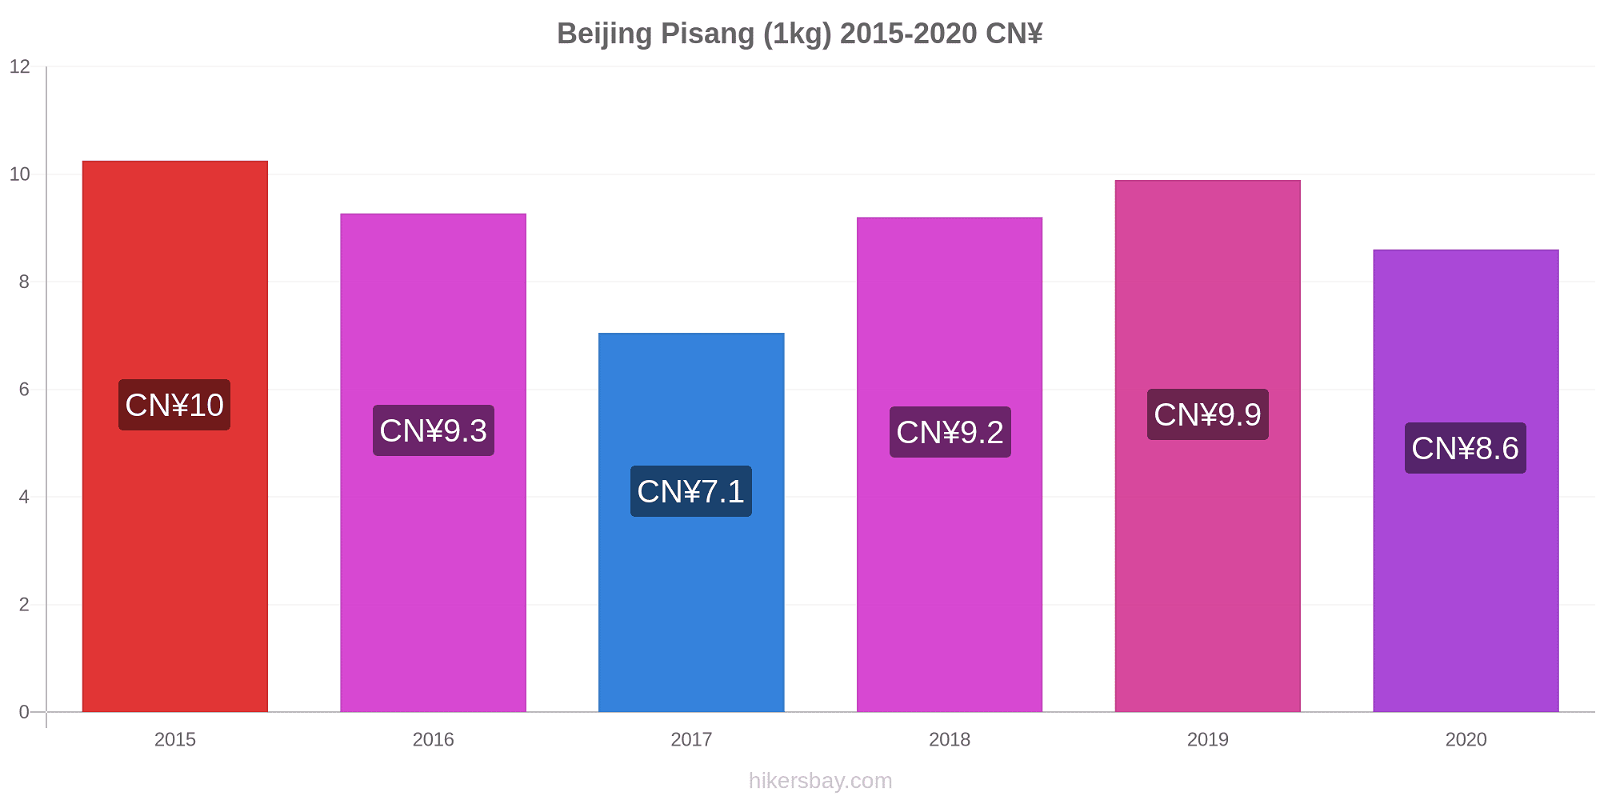 Beijing perubahan harga Pisang (1kg) hikersbay.com